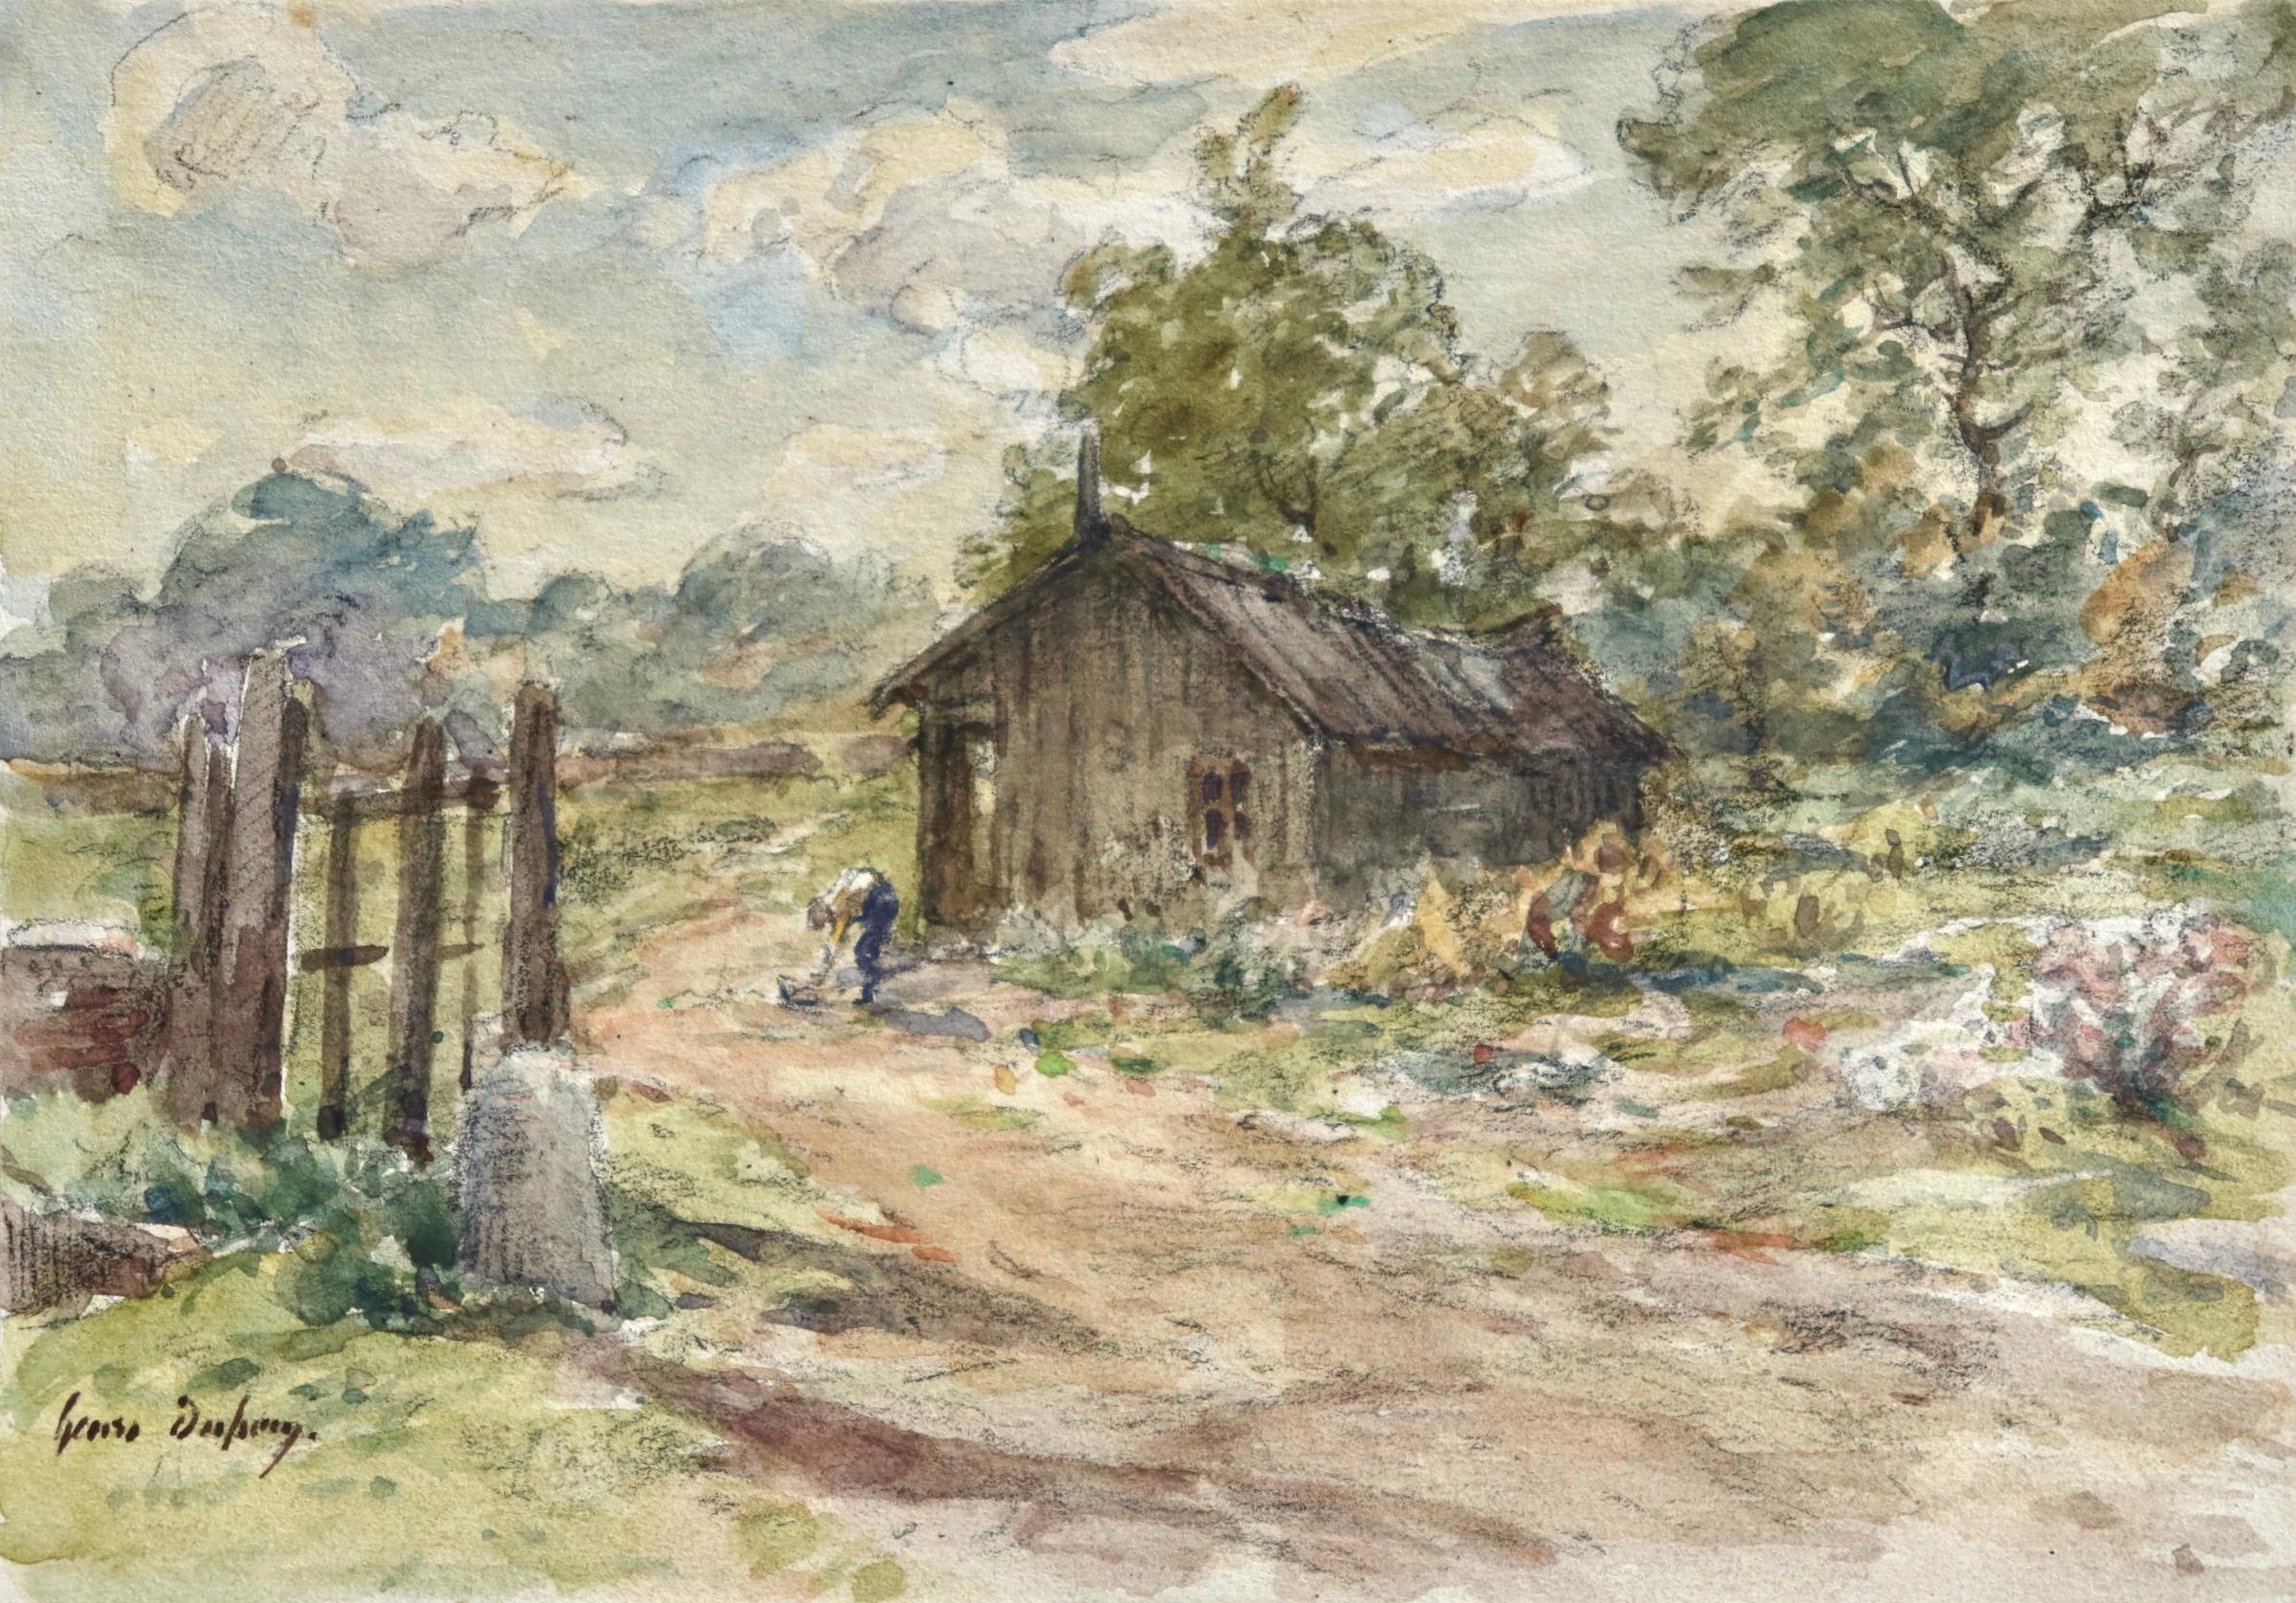 Aquarell auf Papier um 1907 von dem französischen impressionistischen Maler Henri Duhem, das einen Mann zeigt, der neben einem kleinen Holzhaus in einer ländlichen französischen Landschaft steht. Signiert unten links. Dieses Stück ist derzeit nicht